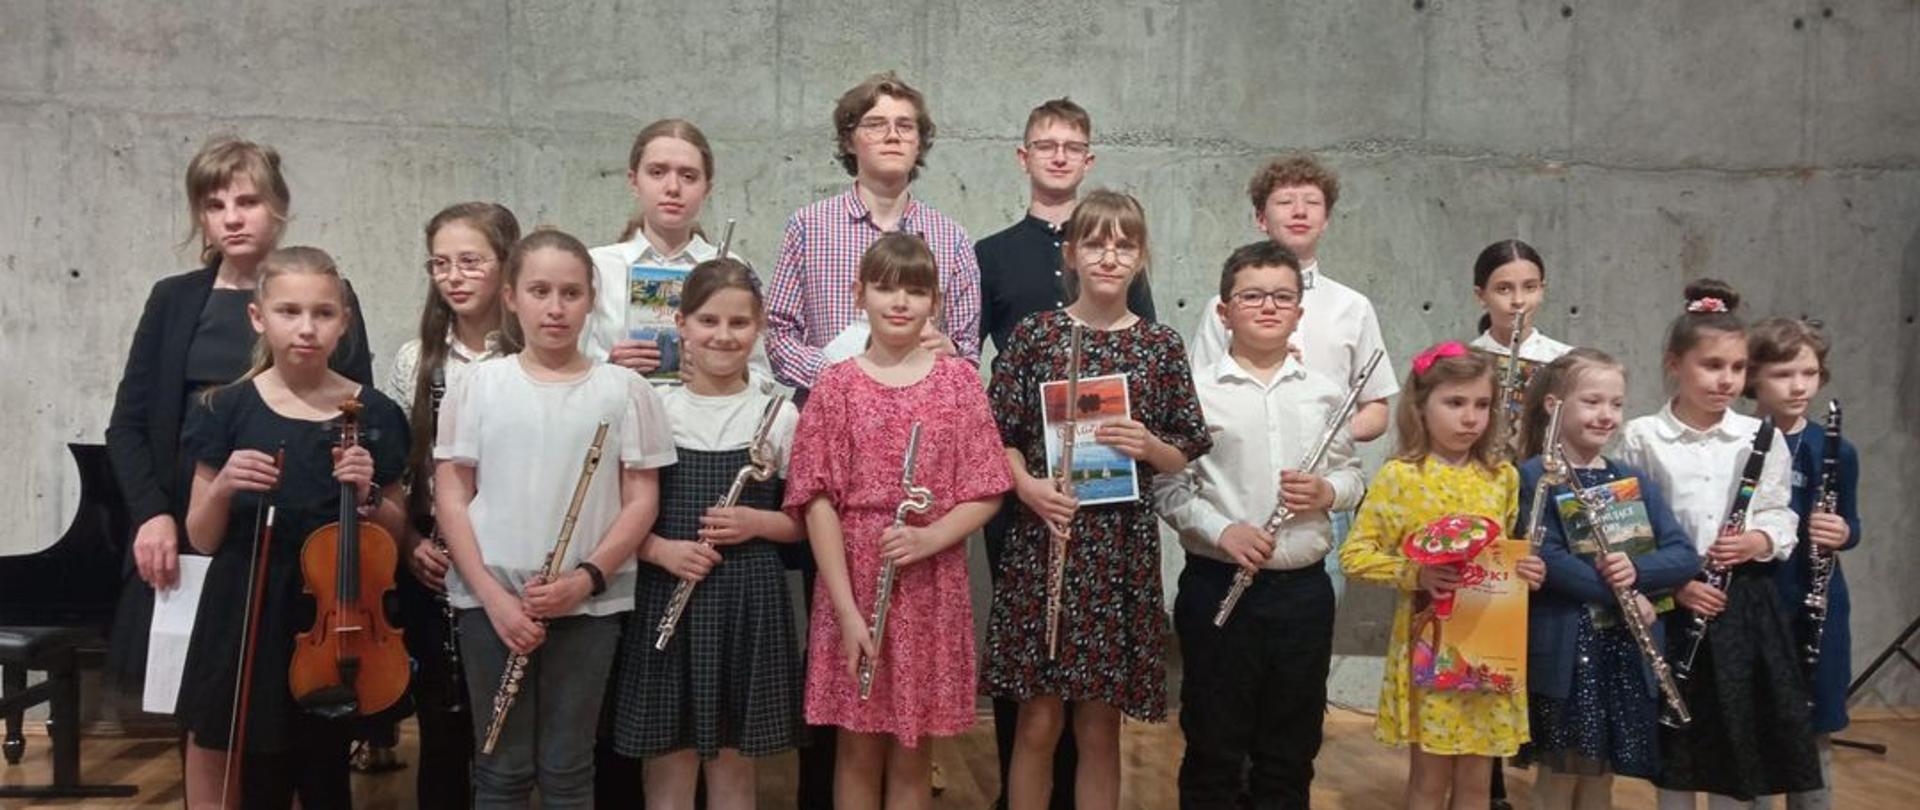 Grupa uczniów trzymających w rękach instrumenty stoi na scenie sali koncertowej szkoły muzycznej